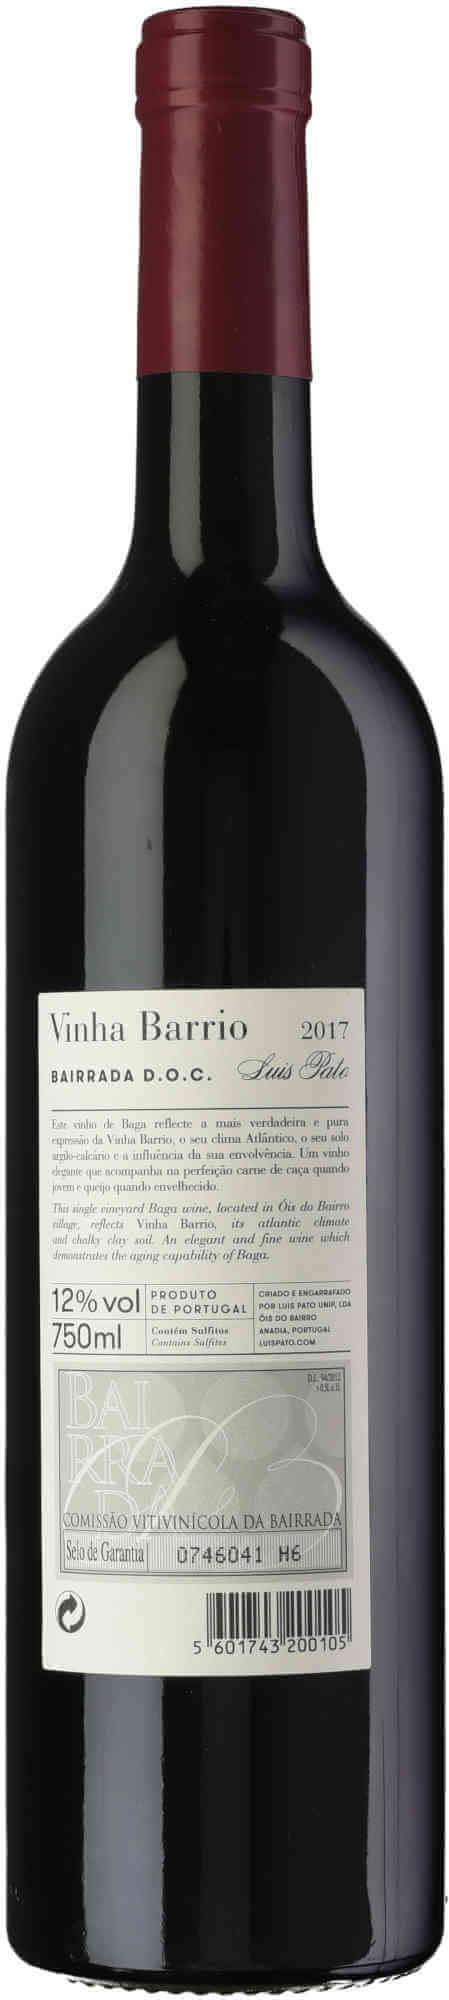 Luis-Pato-Vinha-Barrio-back